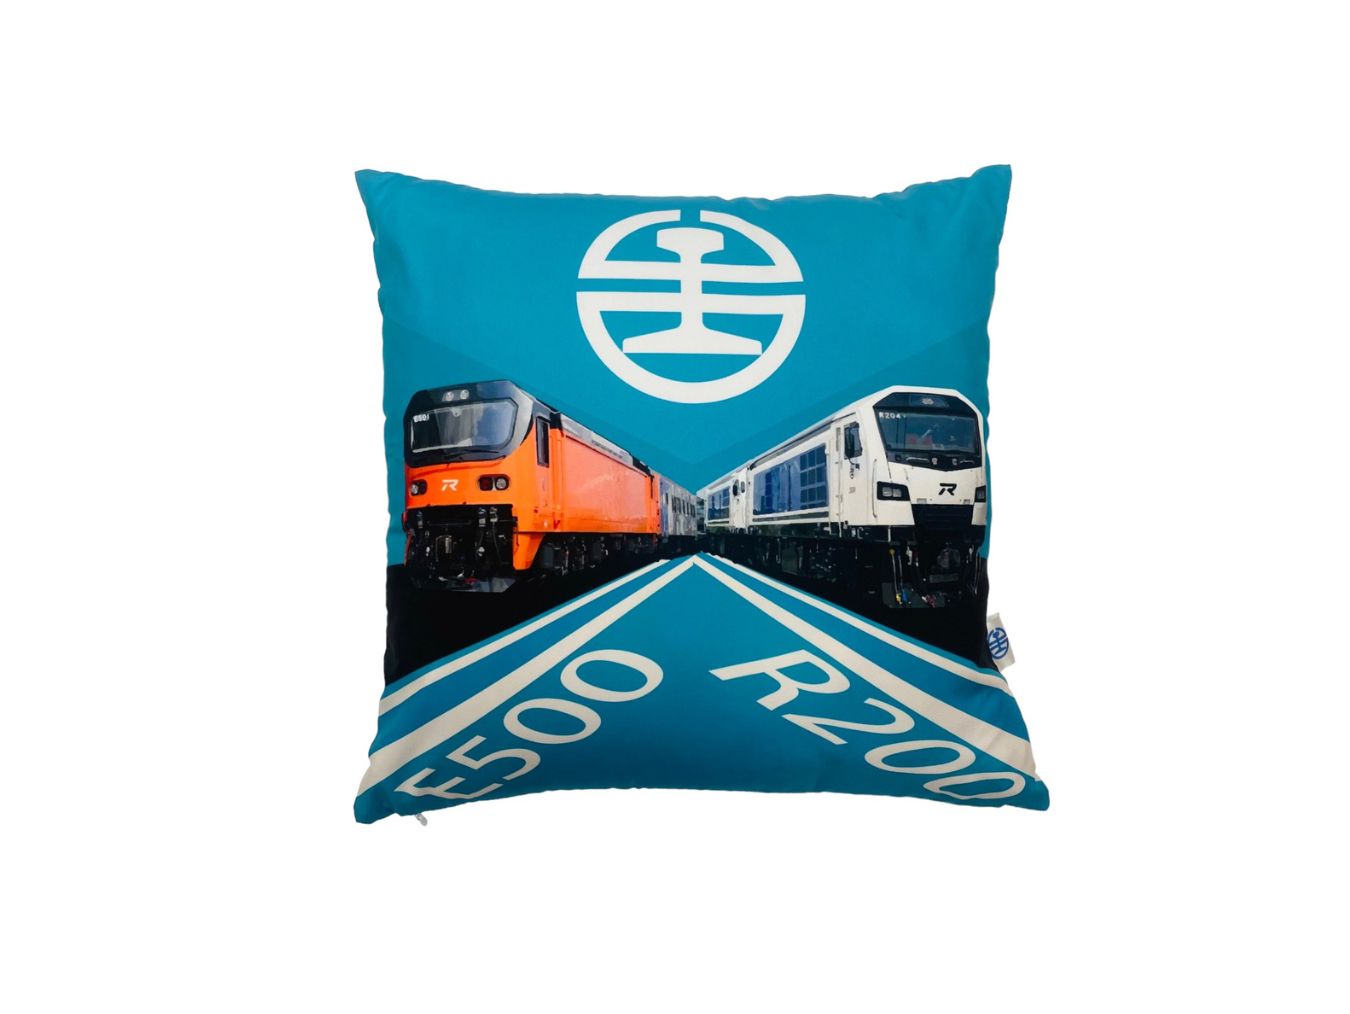 火車方形抱枕(E500及R200)圖片共1張